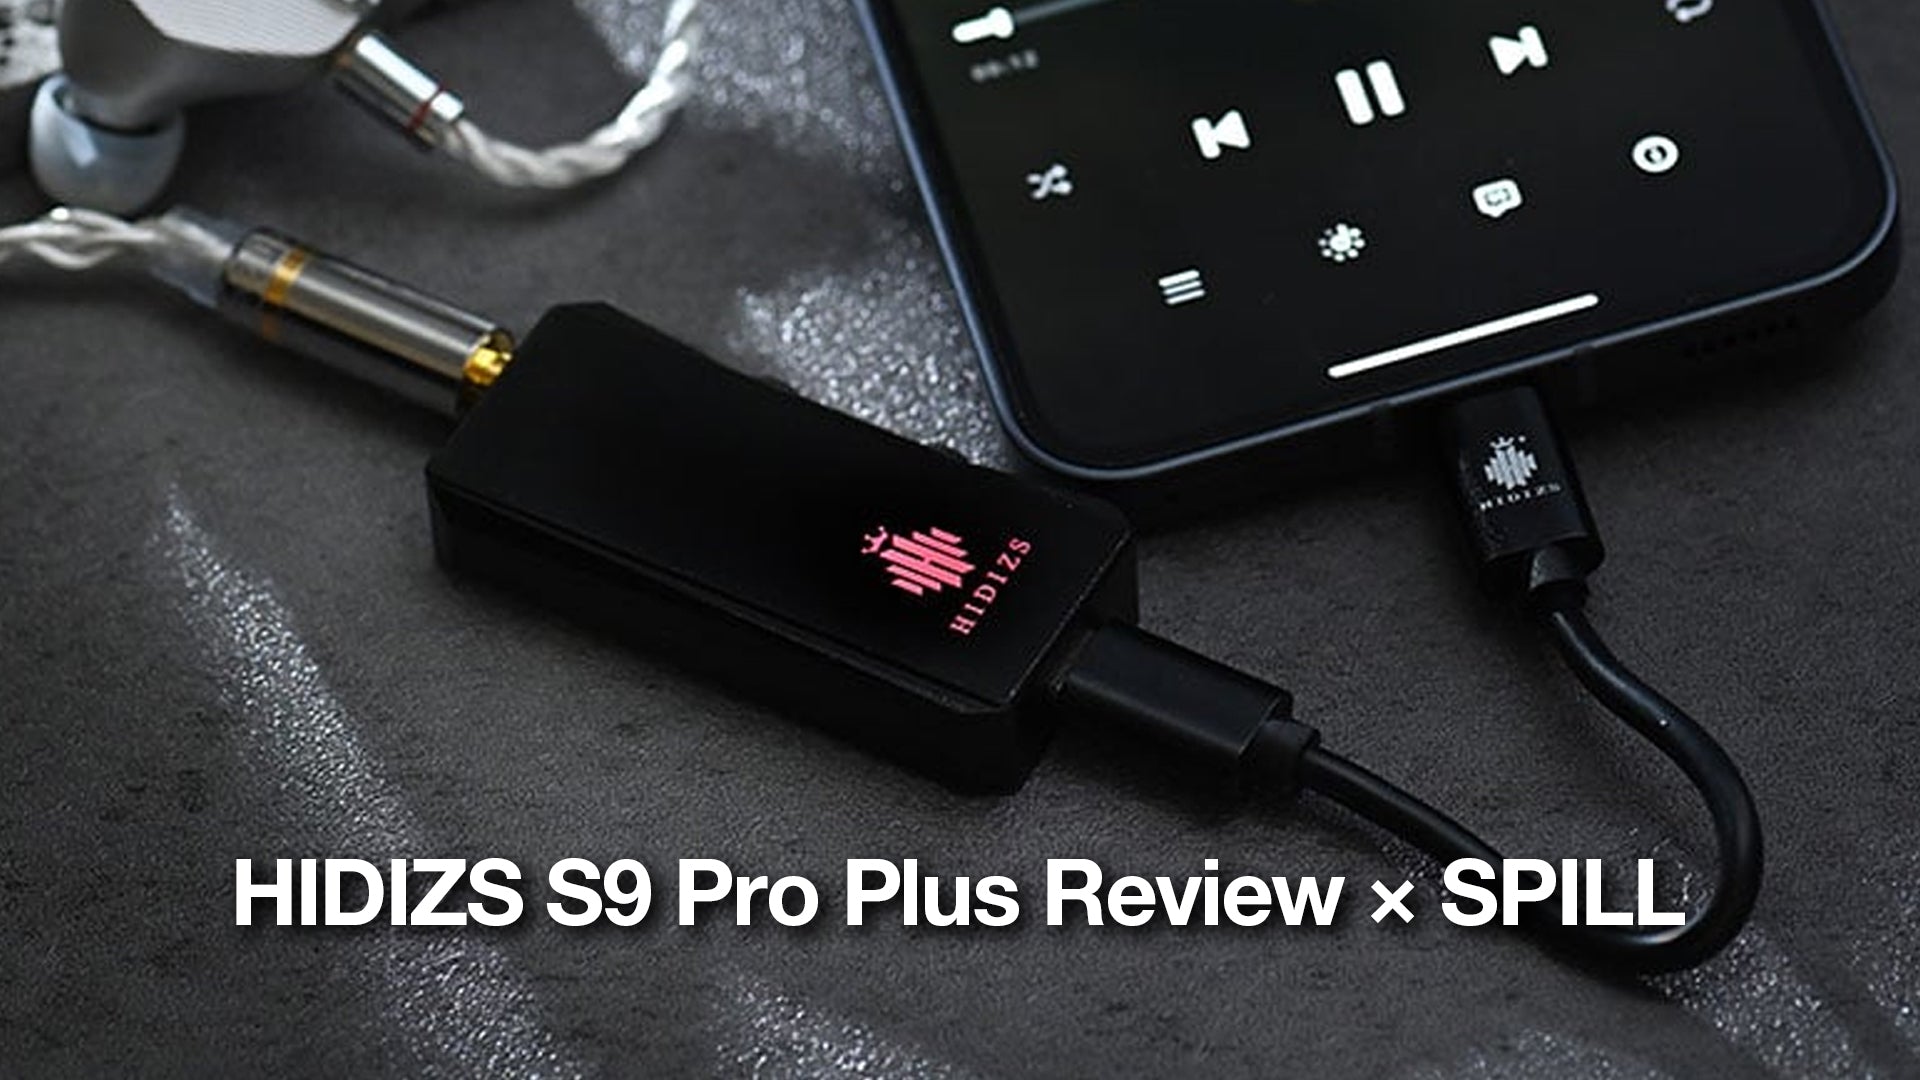 HIDIZS S9 Pro Plus Review - SPILL